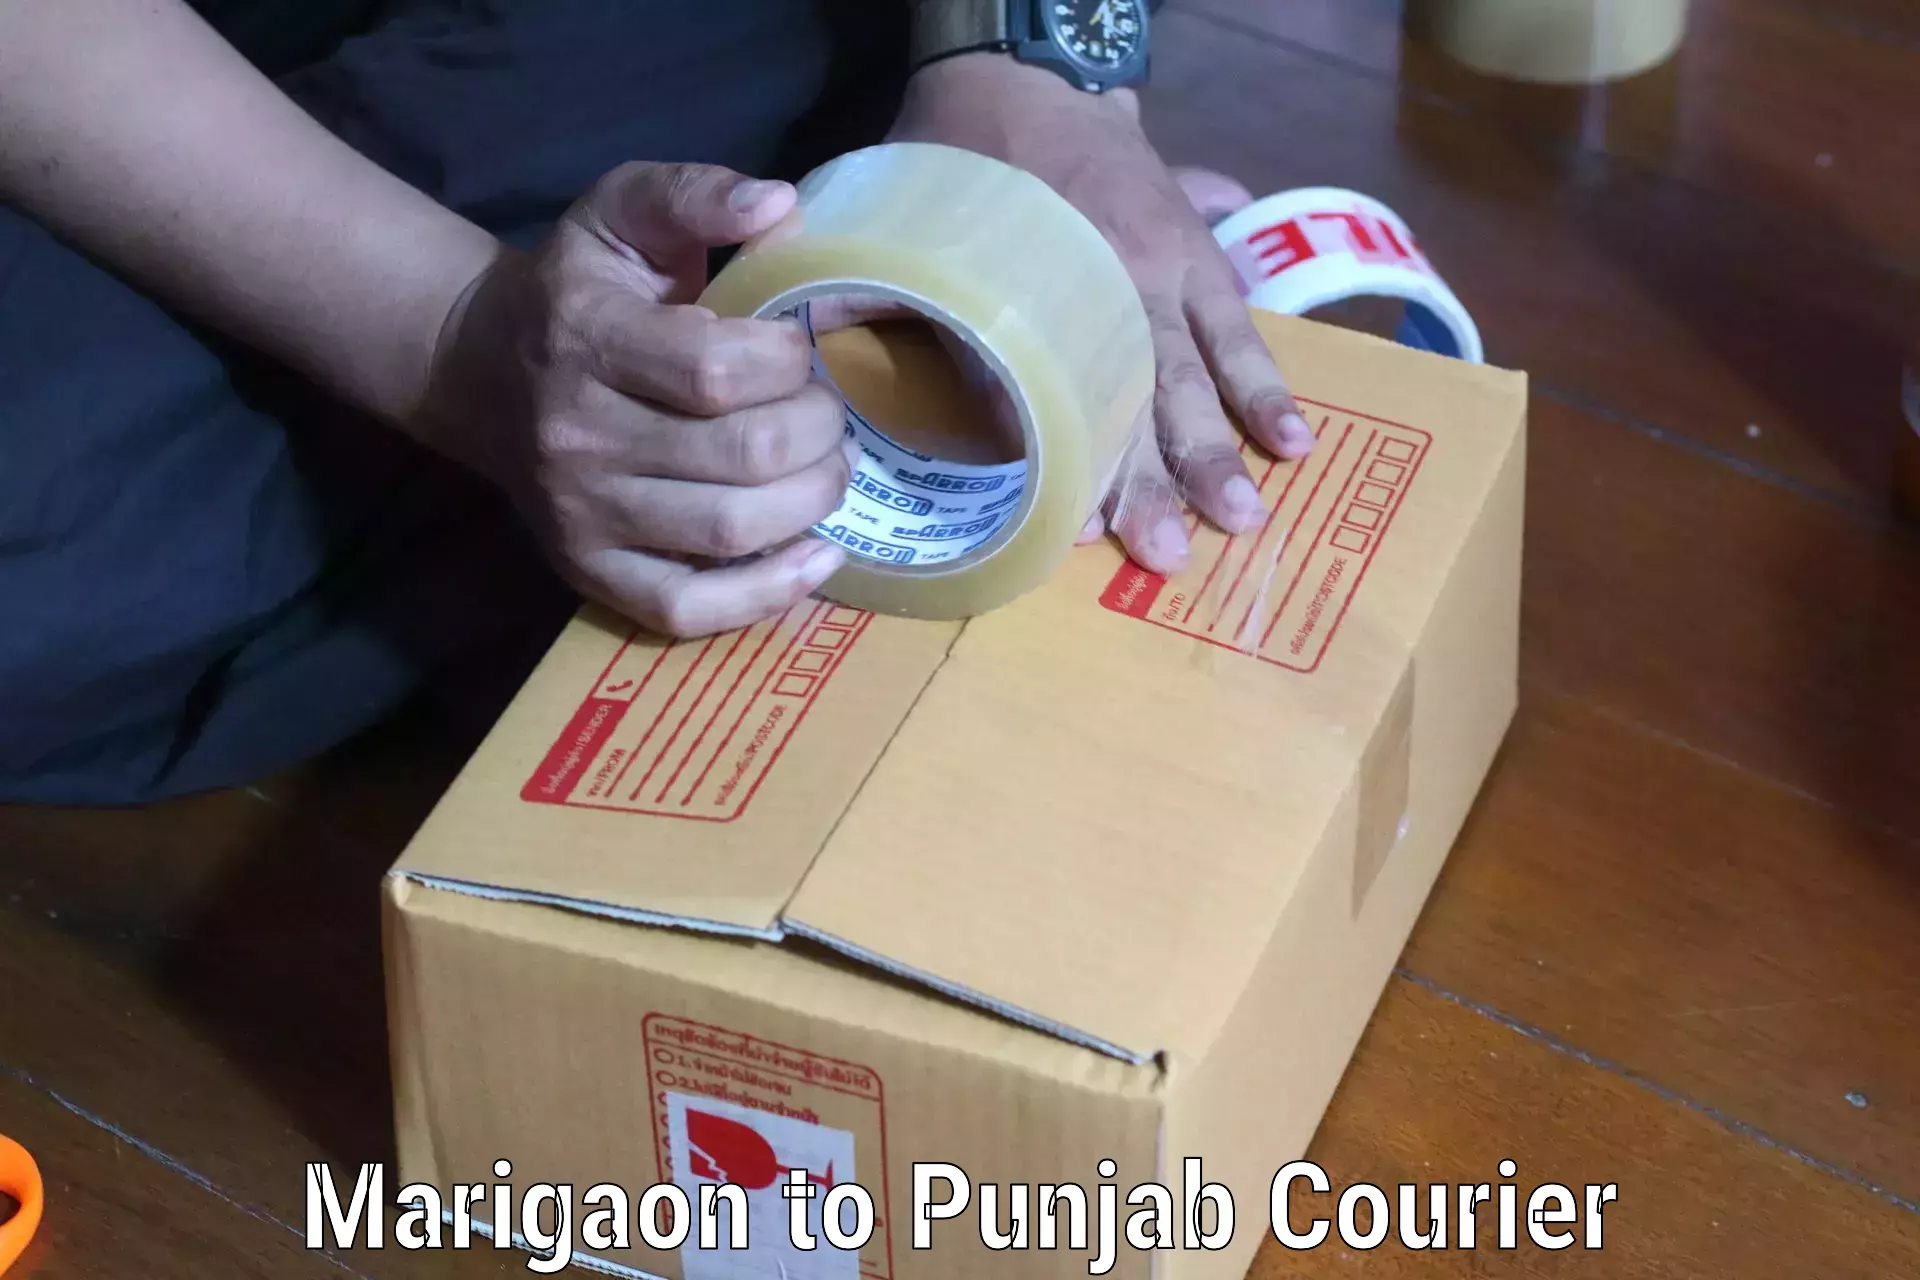 Express package transport Marigaon to Punjab